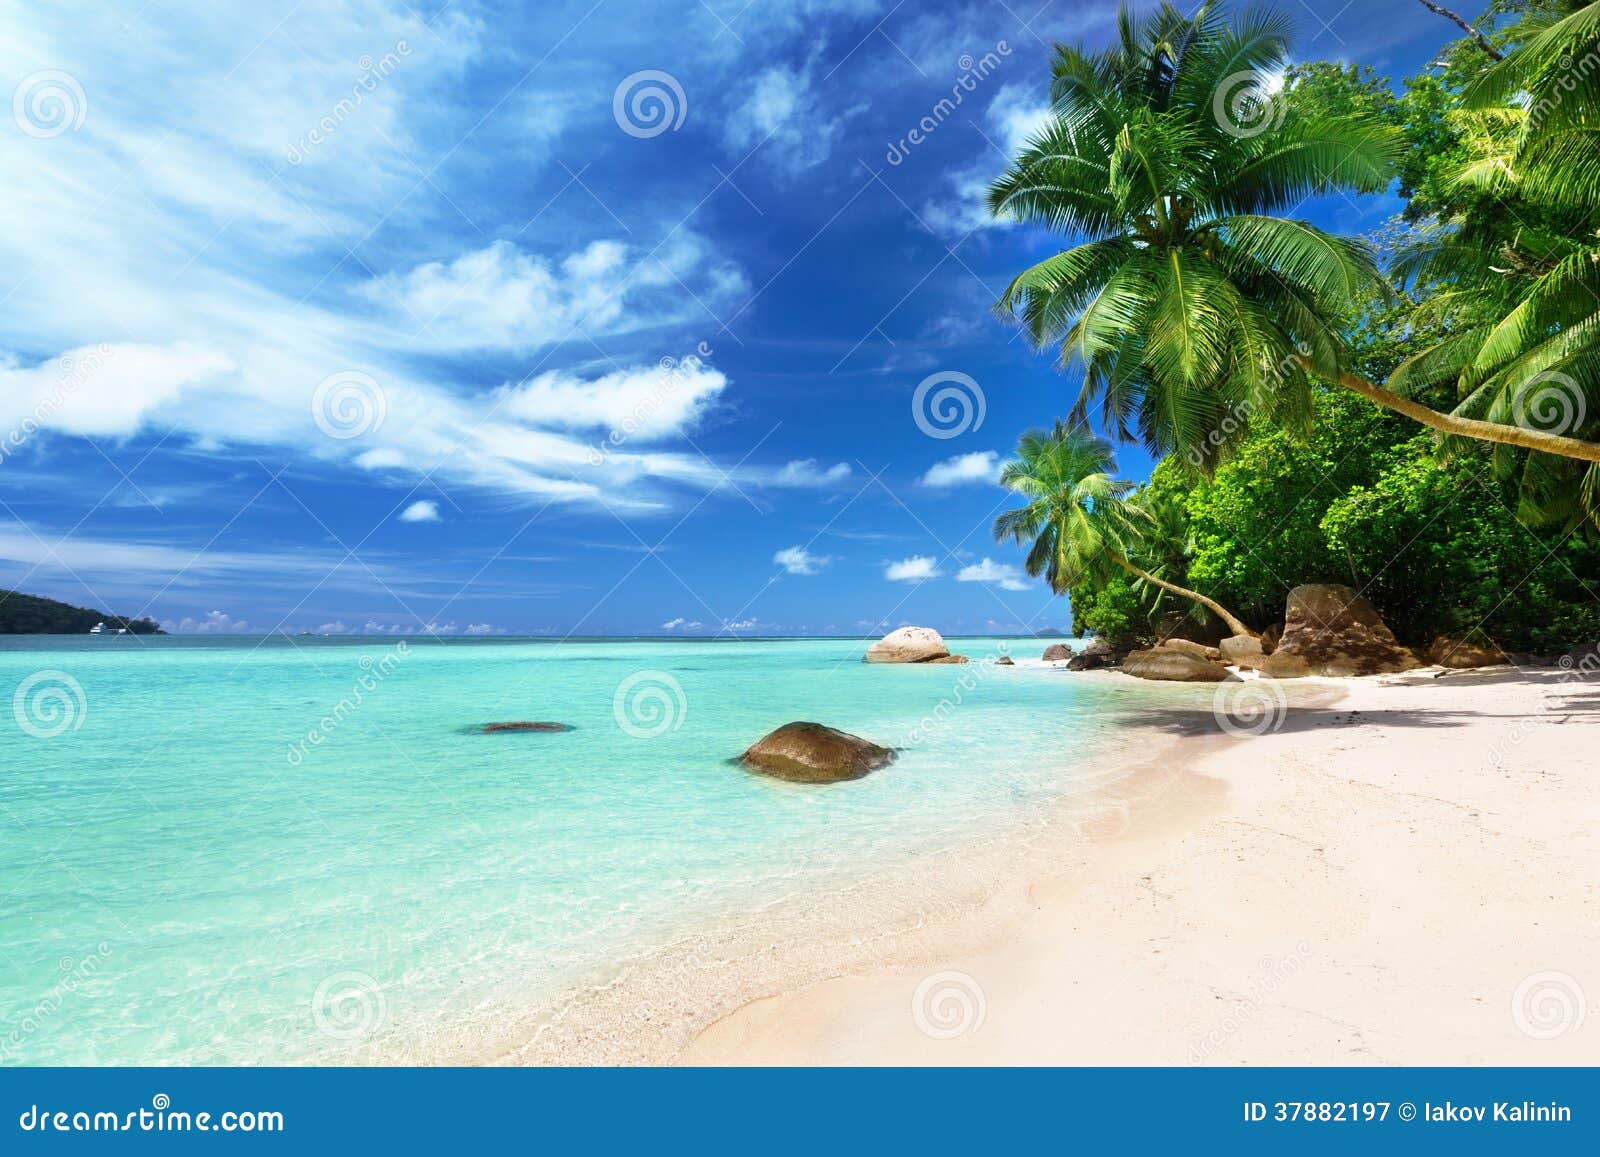 beach on mahe island, seychelles